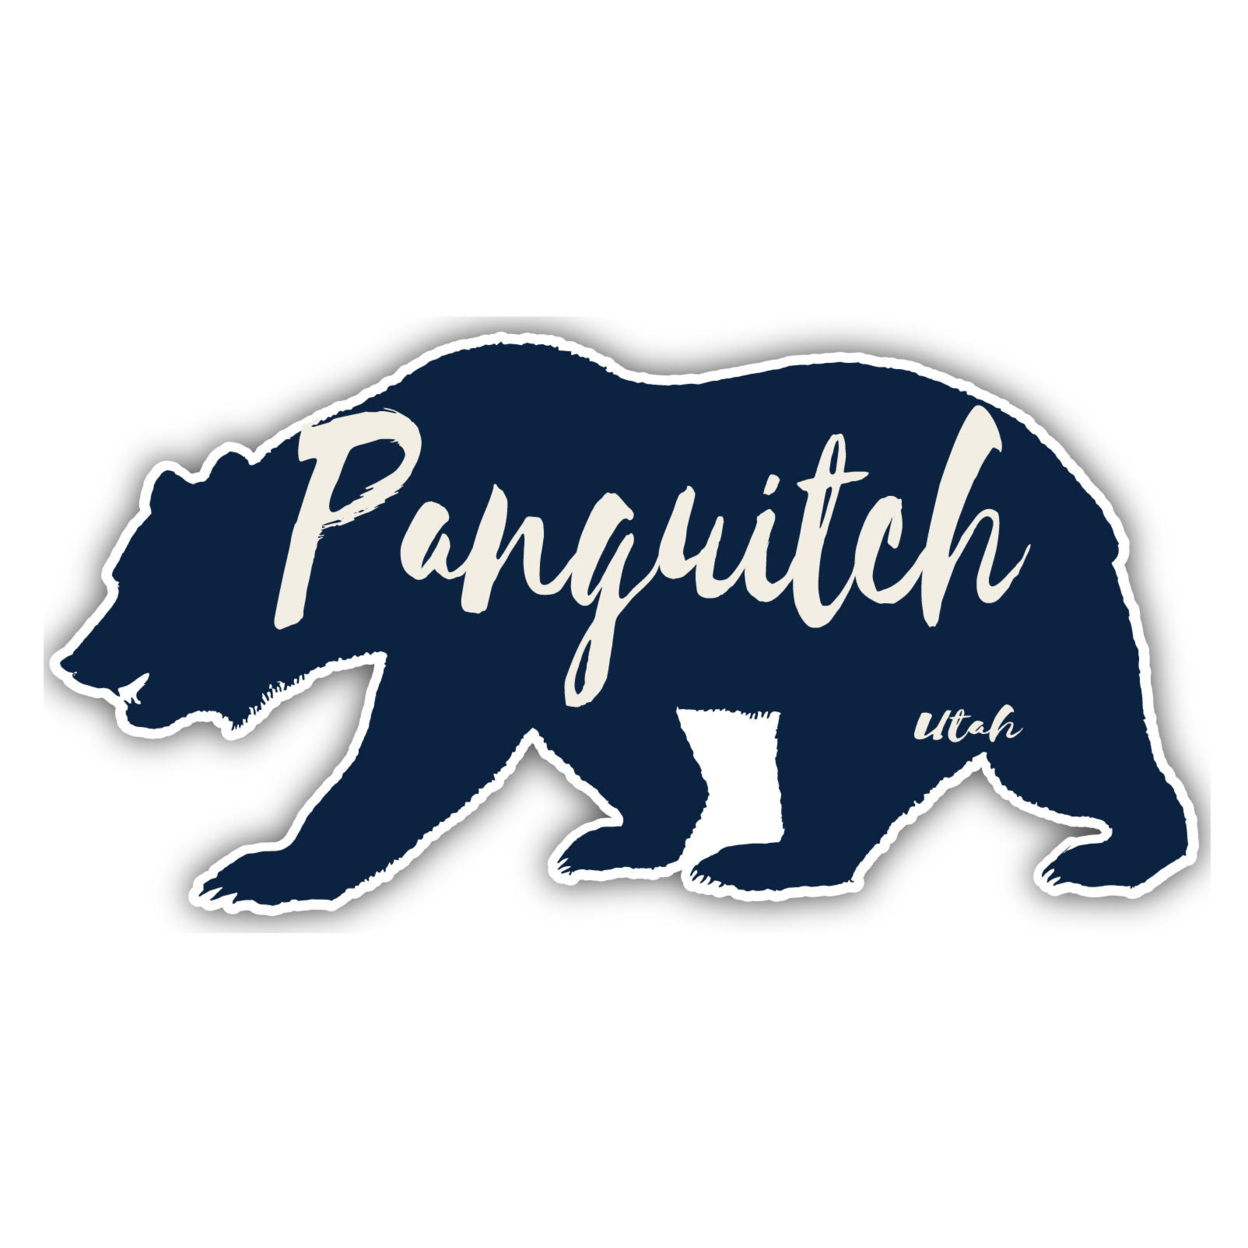 Panguitch Utah Souvenir Decorative Stickers (Choose Theme And Size) - Single Unit, 4-Inch, Bear